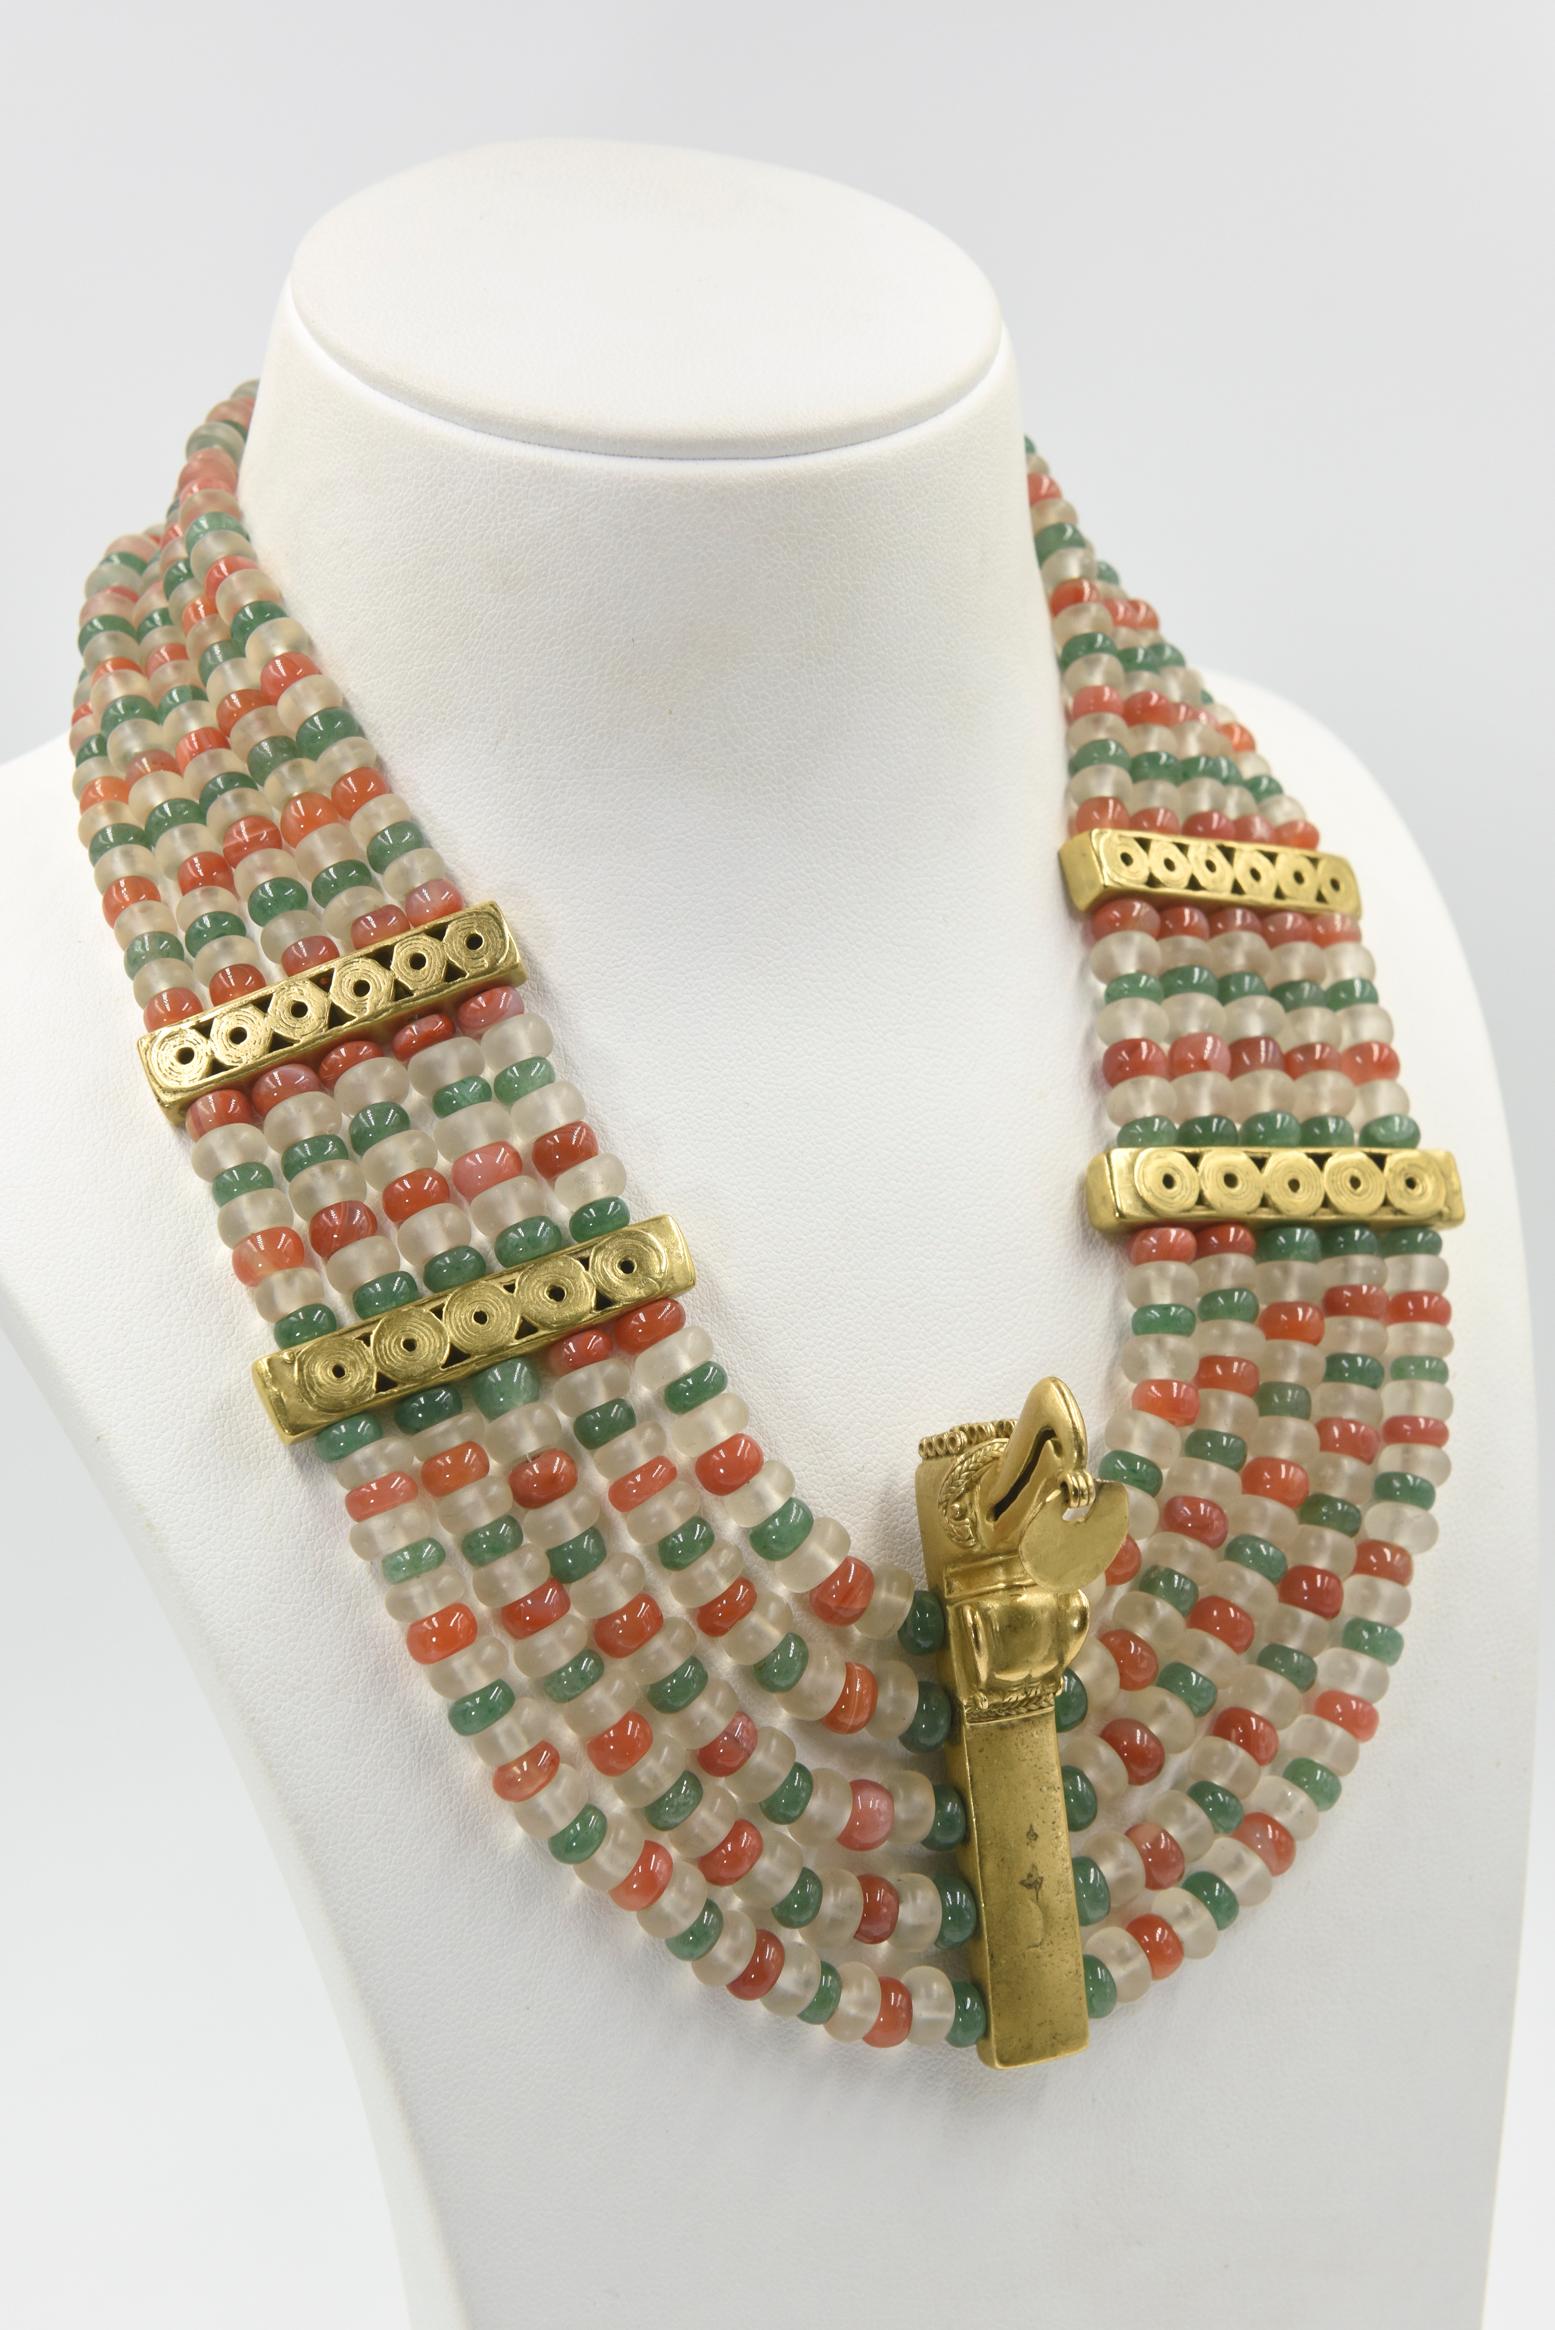 Cette incroyable suite de bijoux de style précolombien provient de la succession d'une mondaine de Miami.  Elle était célèbre pour ses tenues de gala spectaculaires.  Cet ensemble est en métal doré avec des perles de quartz aventurine, de cristal de